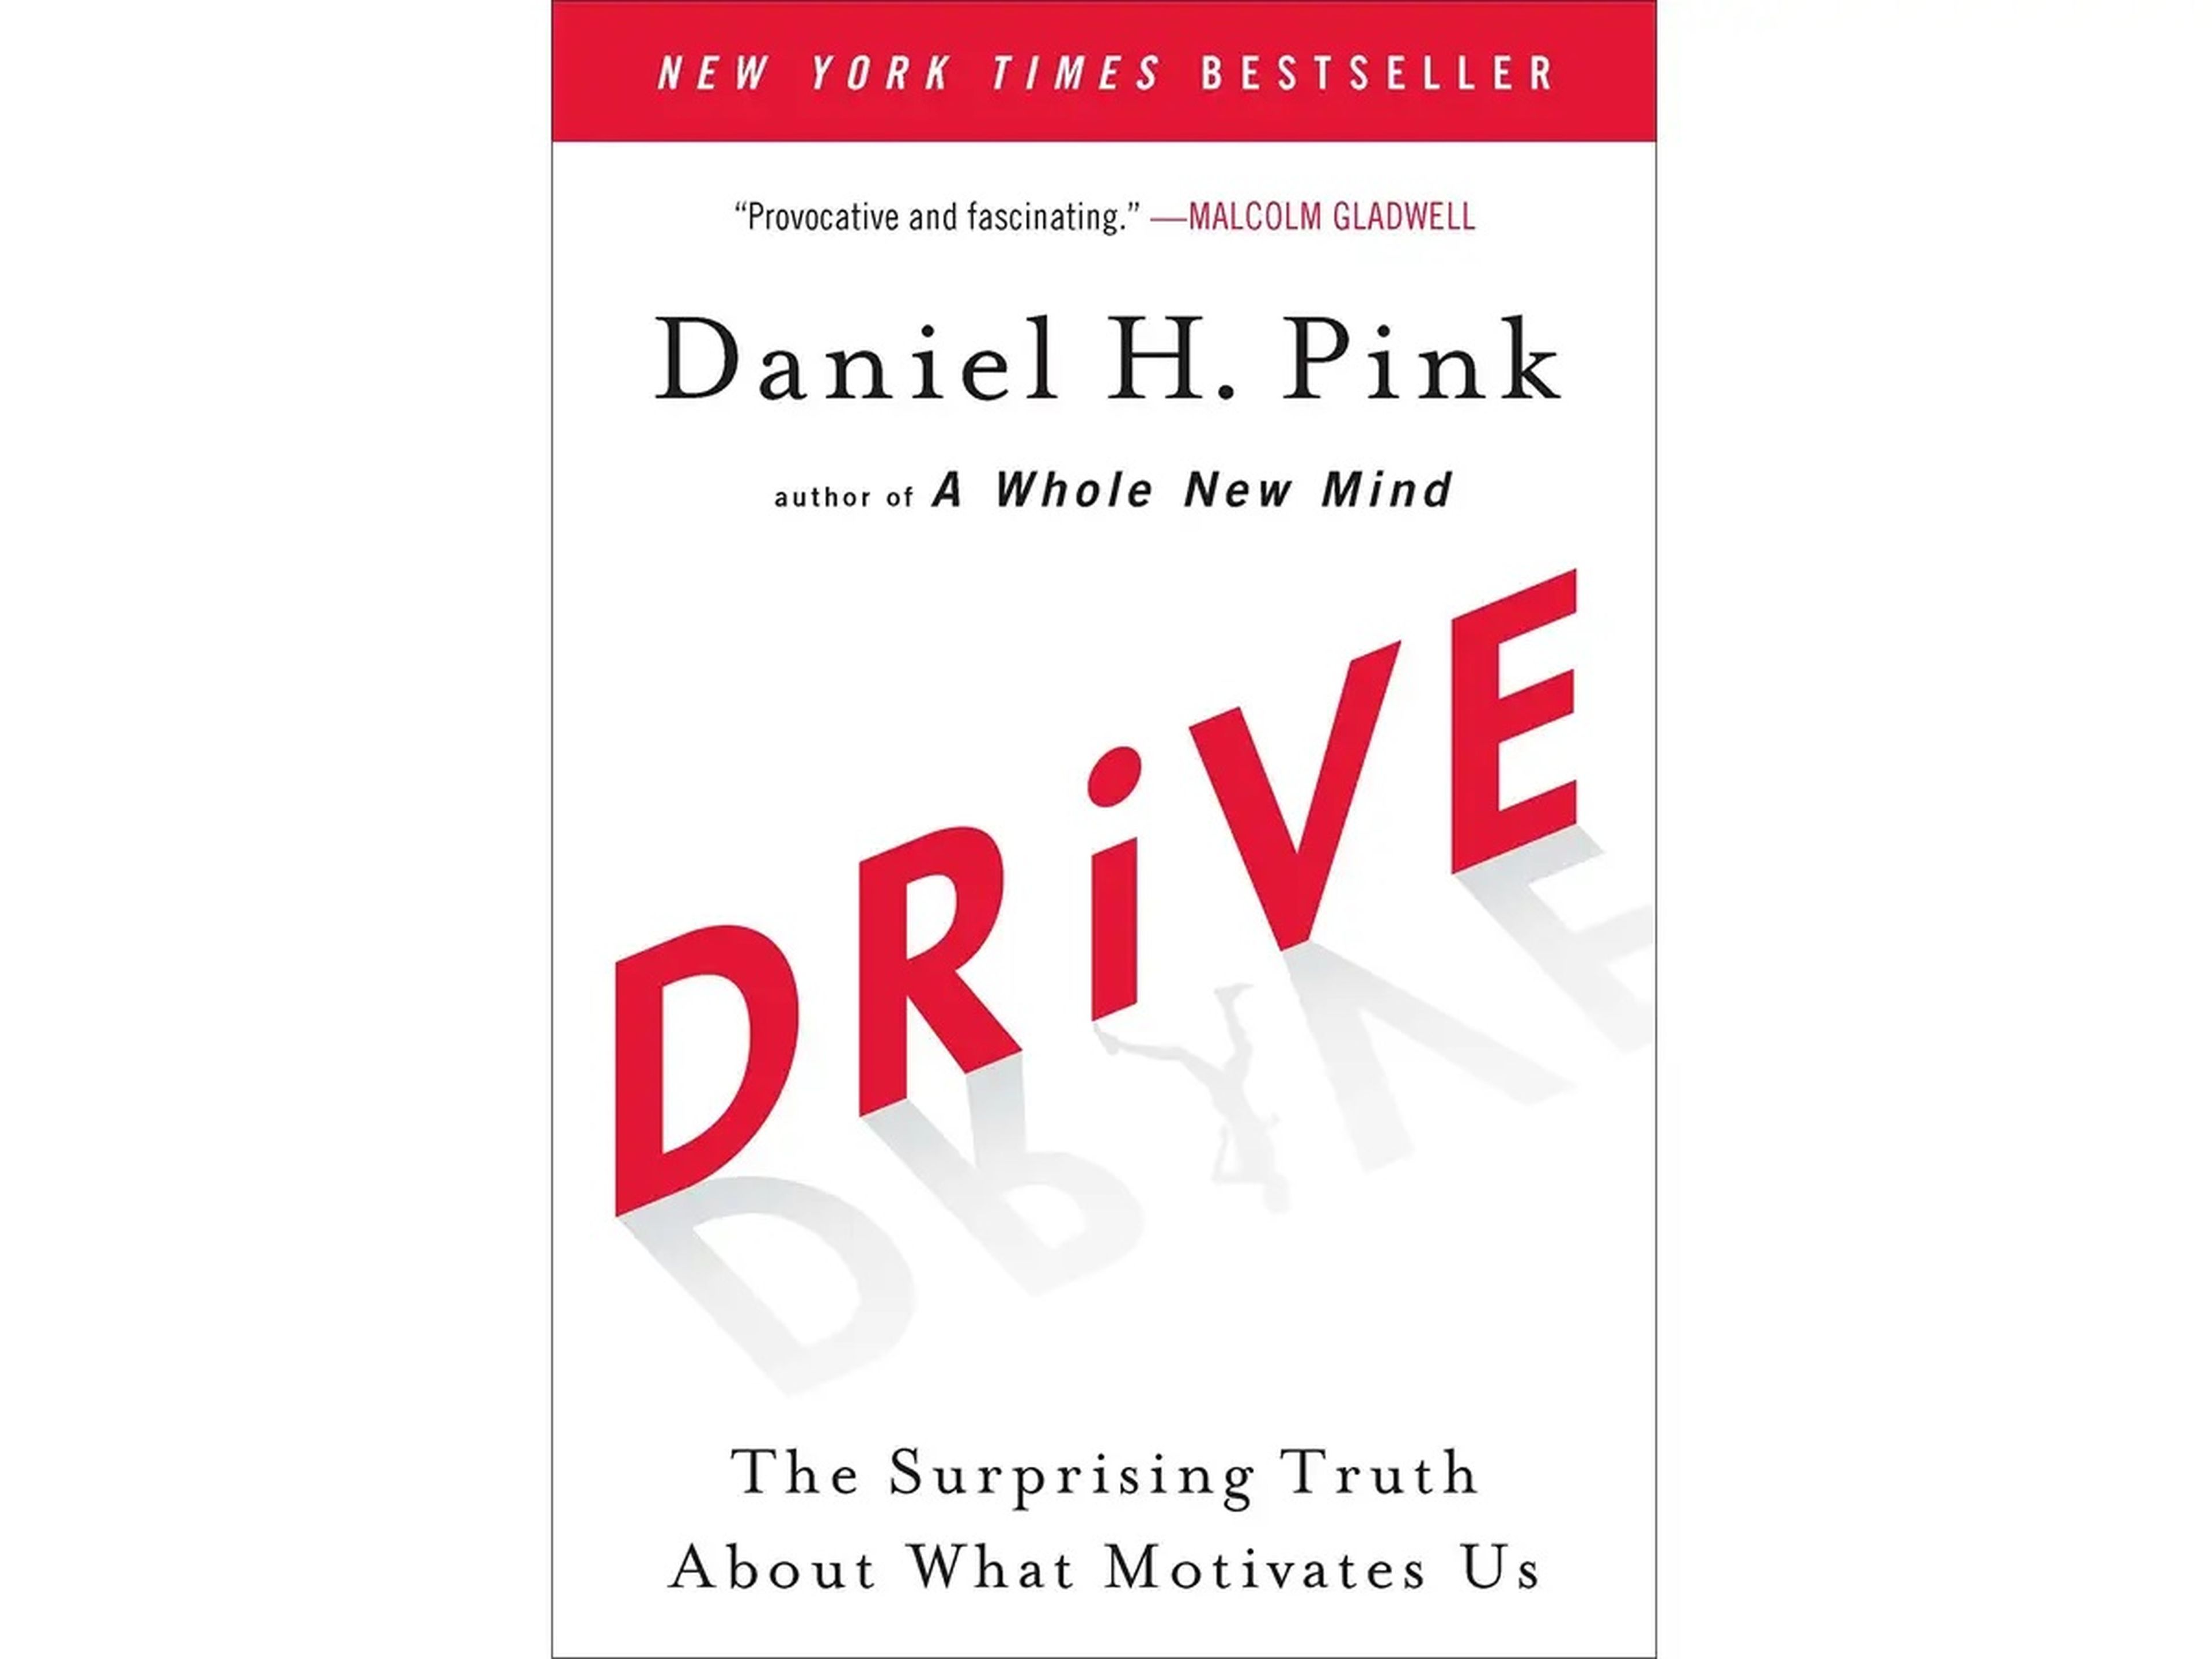 'La sorprendente verdad sobre qué nos motiva' de Daniel H. Pink.